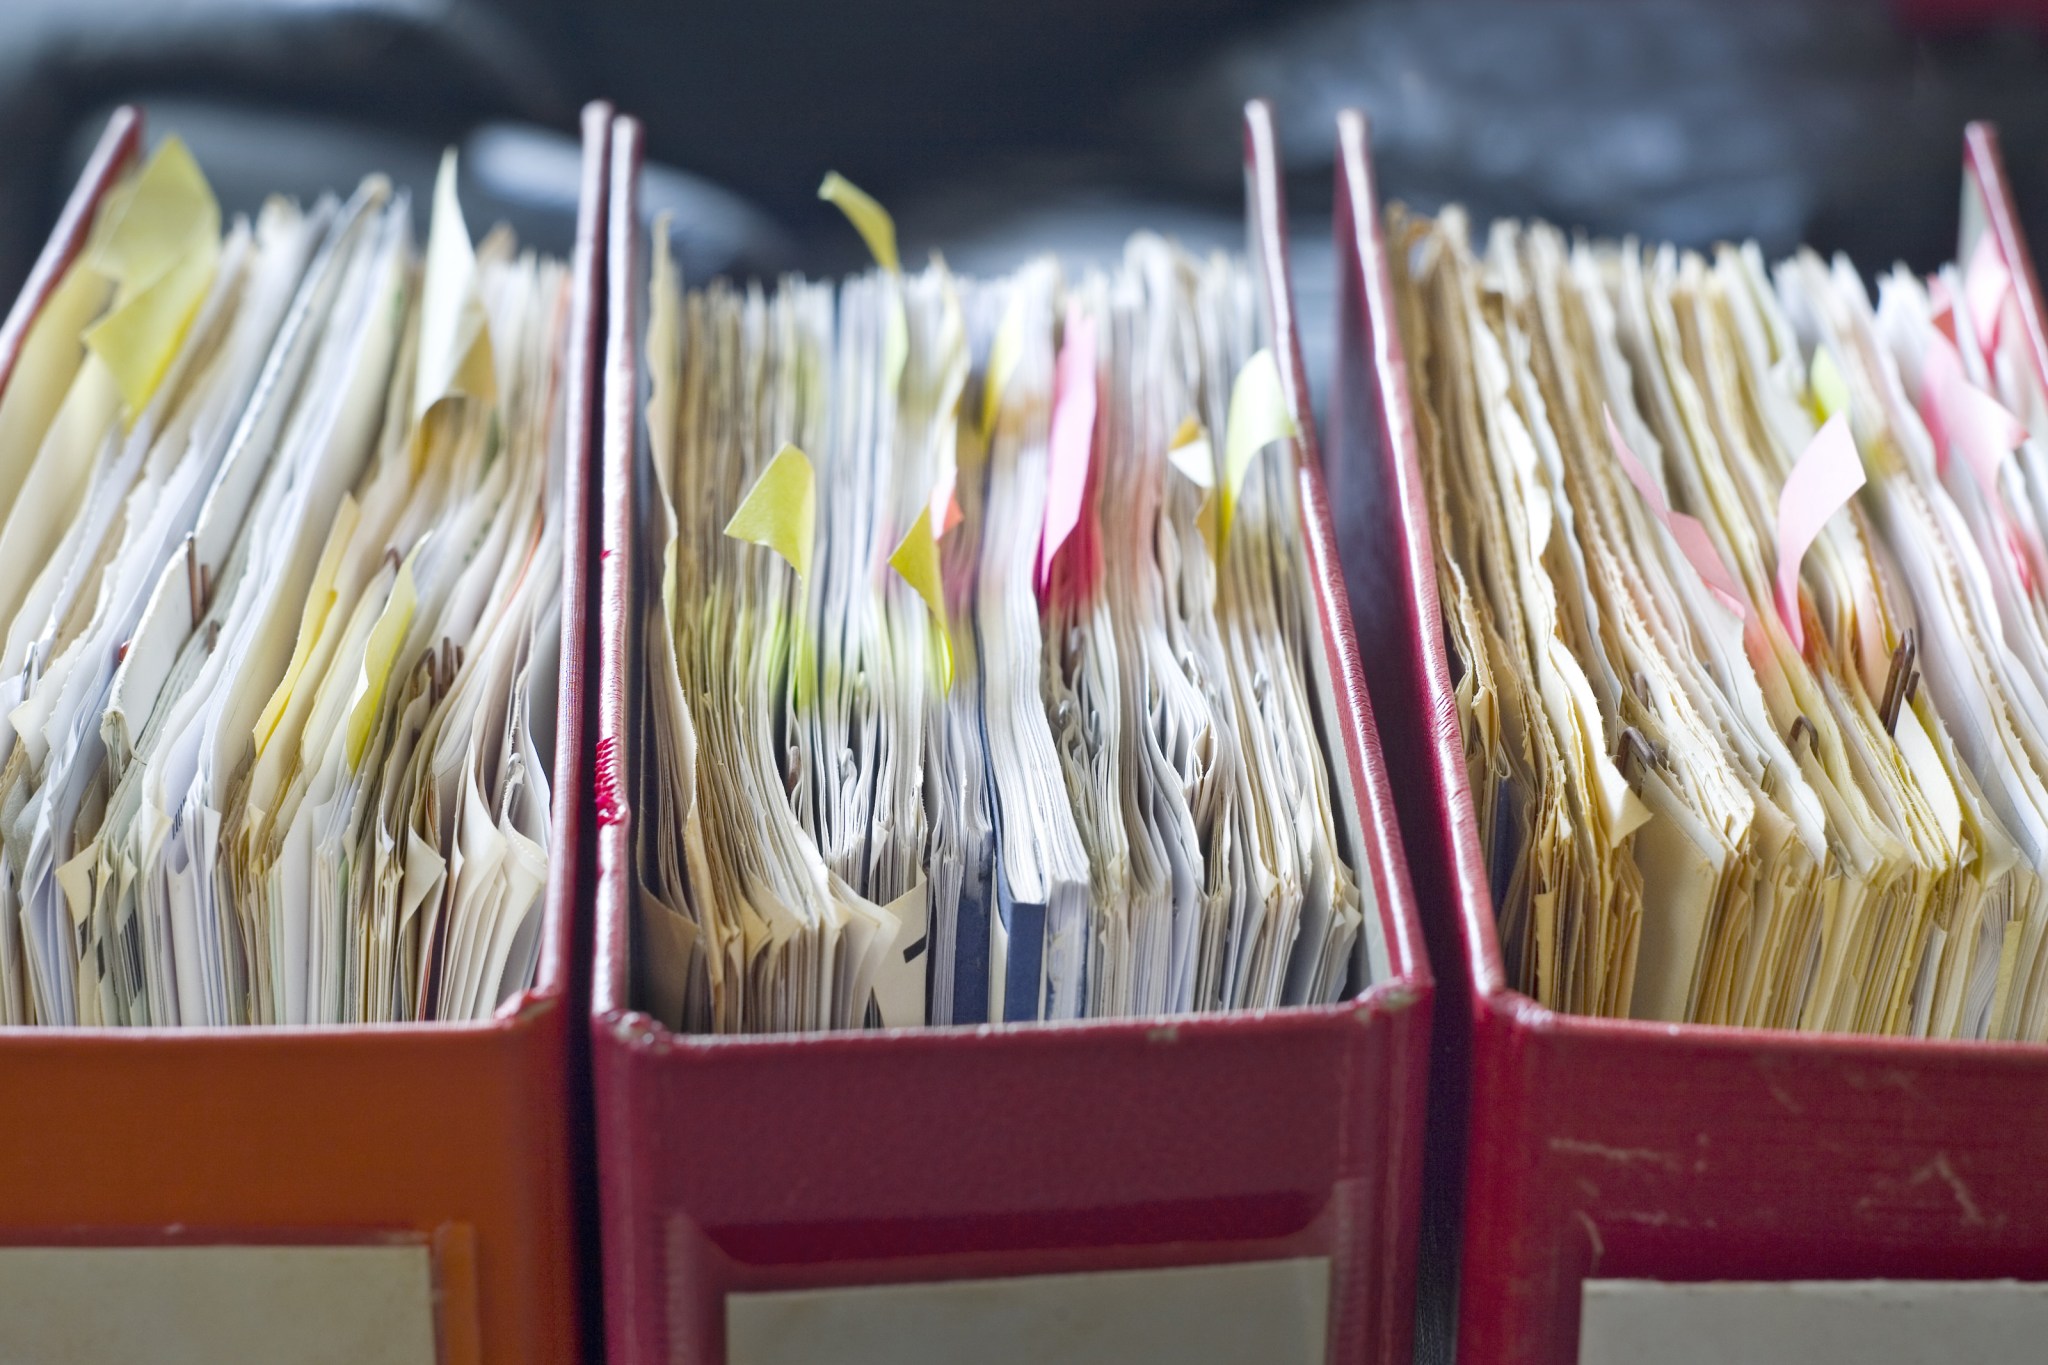 Tax paperwork in binders